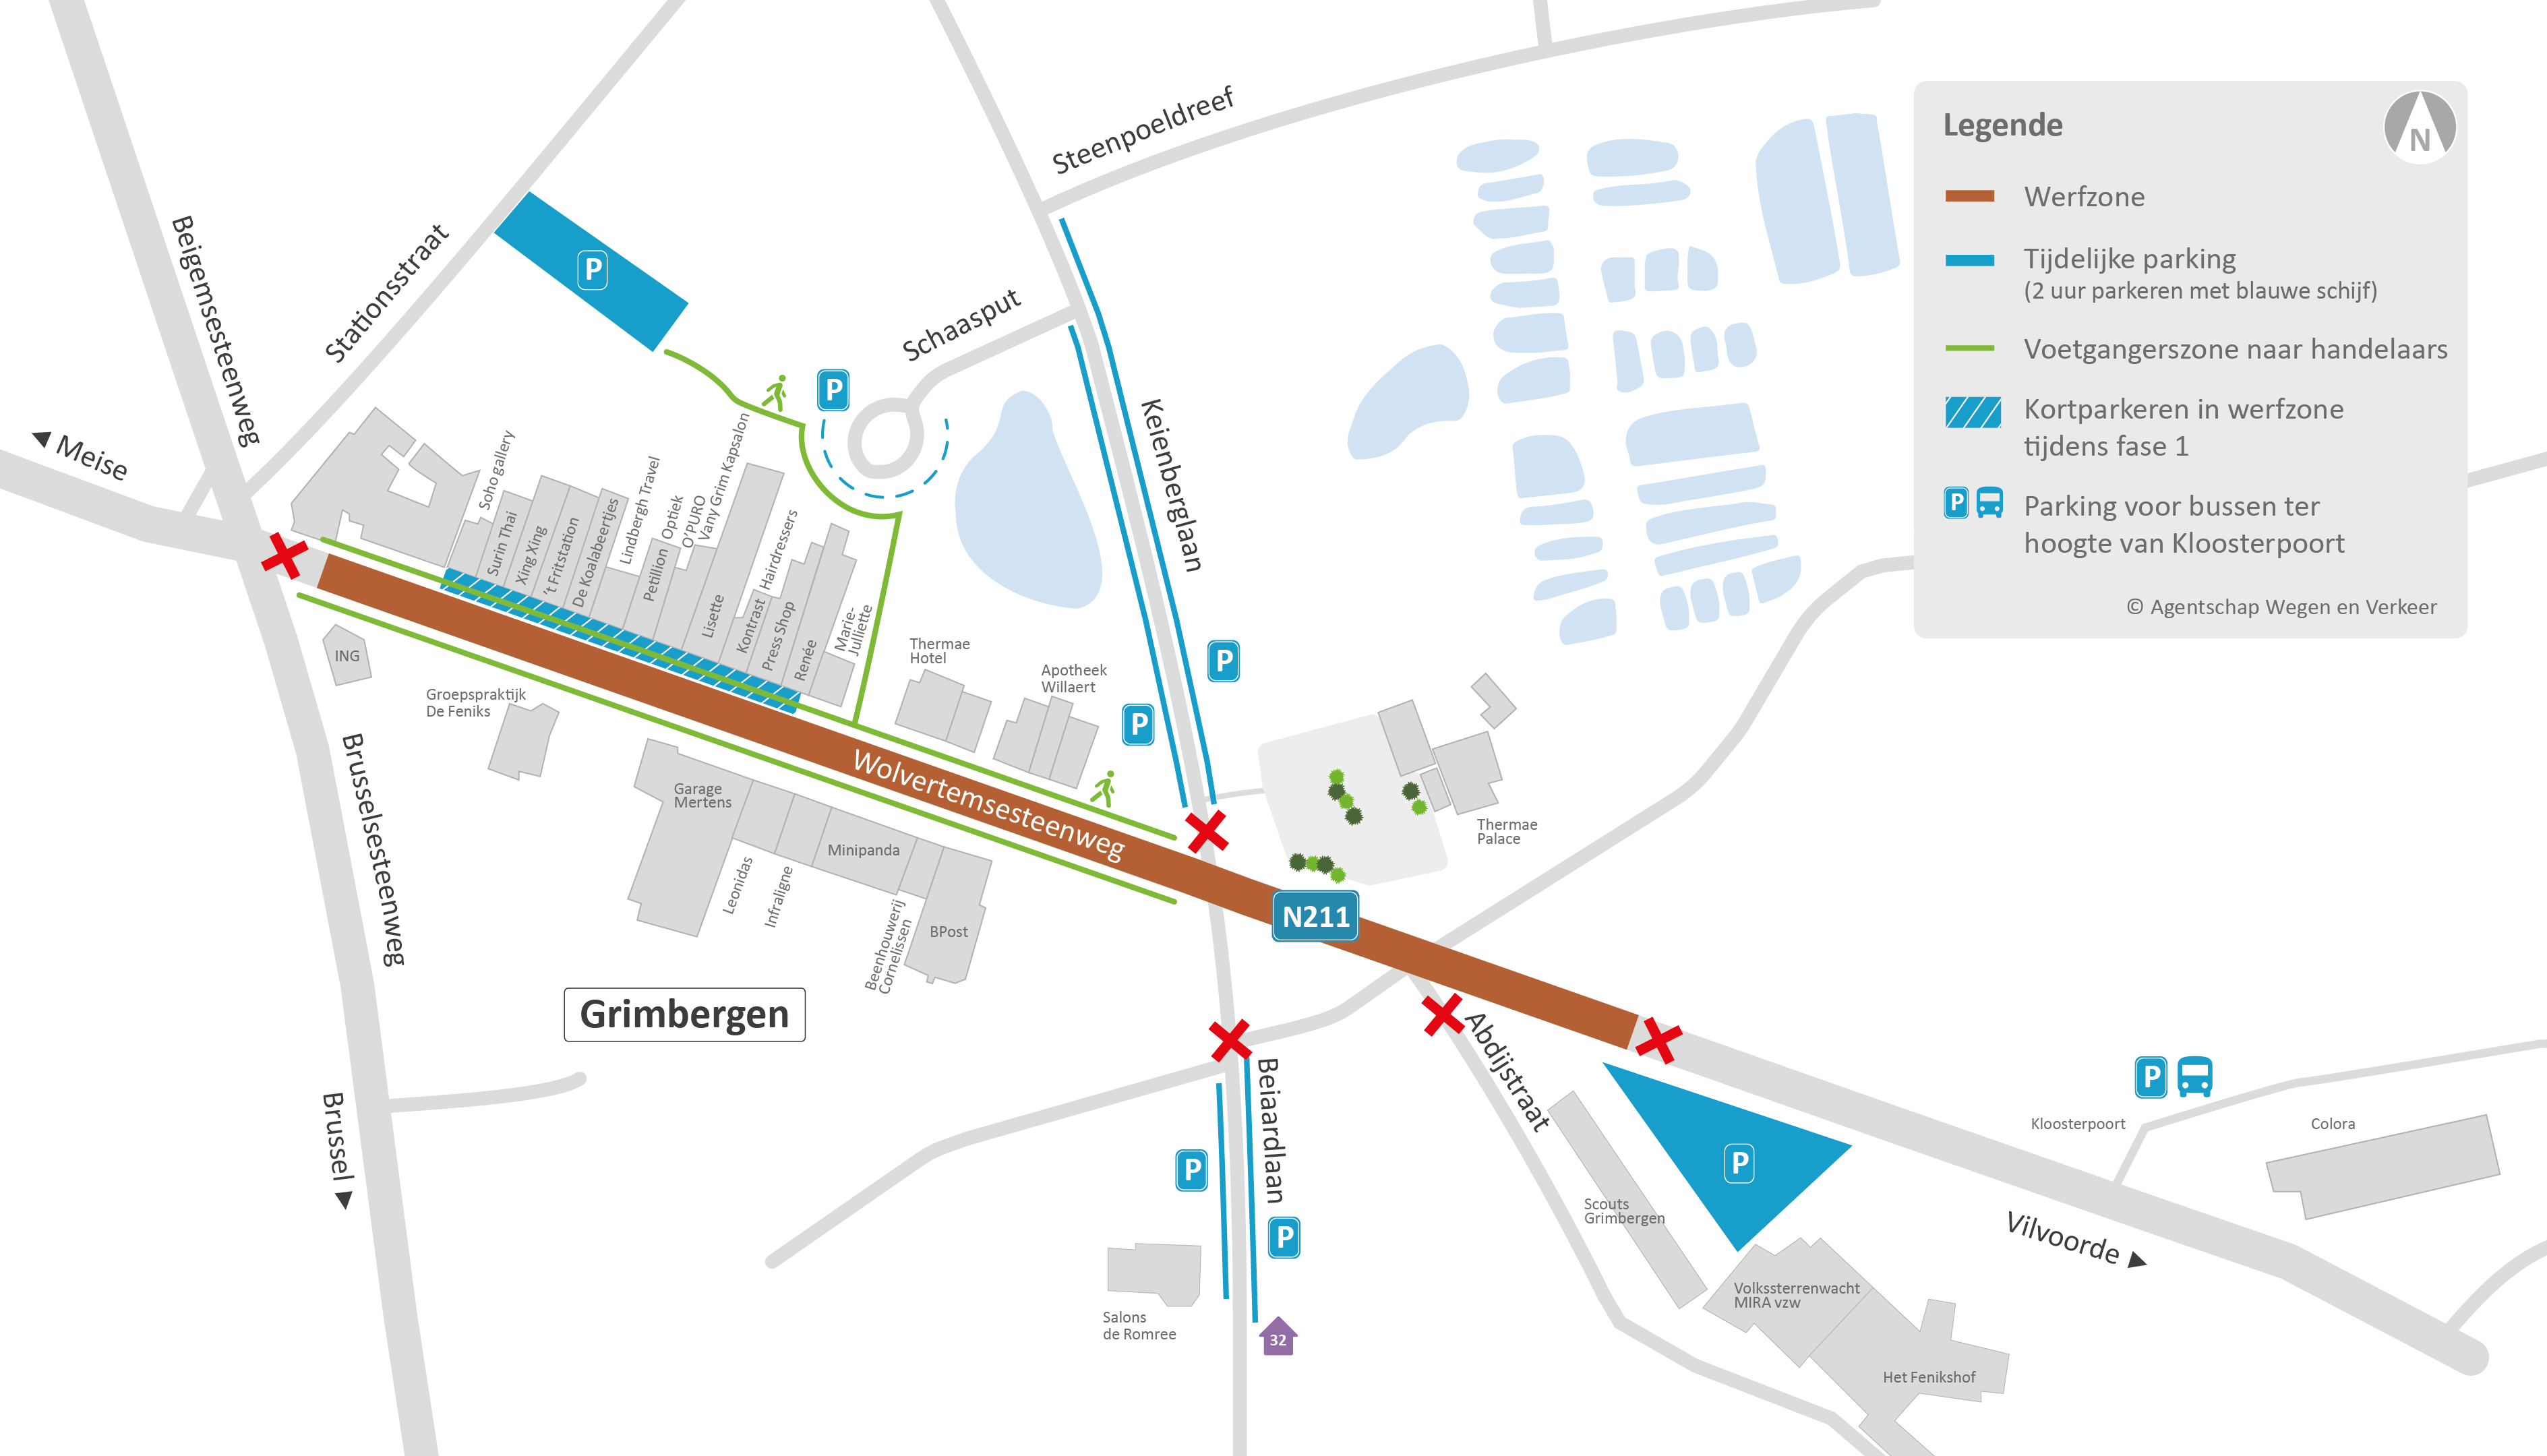 2020-10-21_N211_Wolvertemsesteenweg_Grimbergen_situeringskaart_parking Stationsstraat_Situeringskaart parking